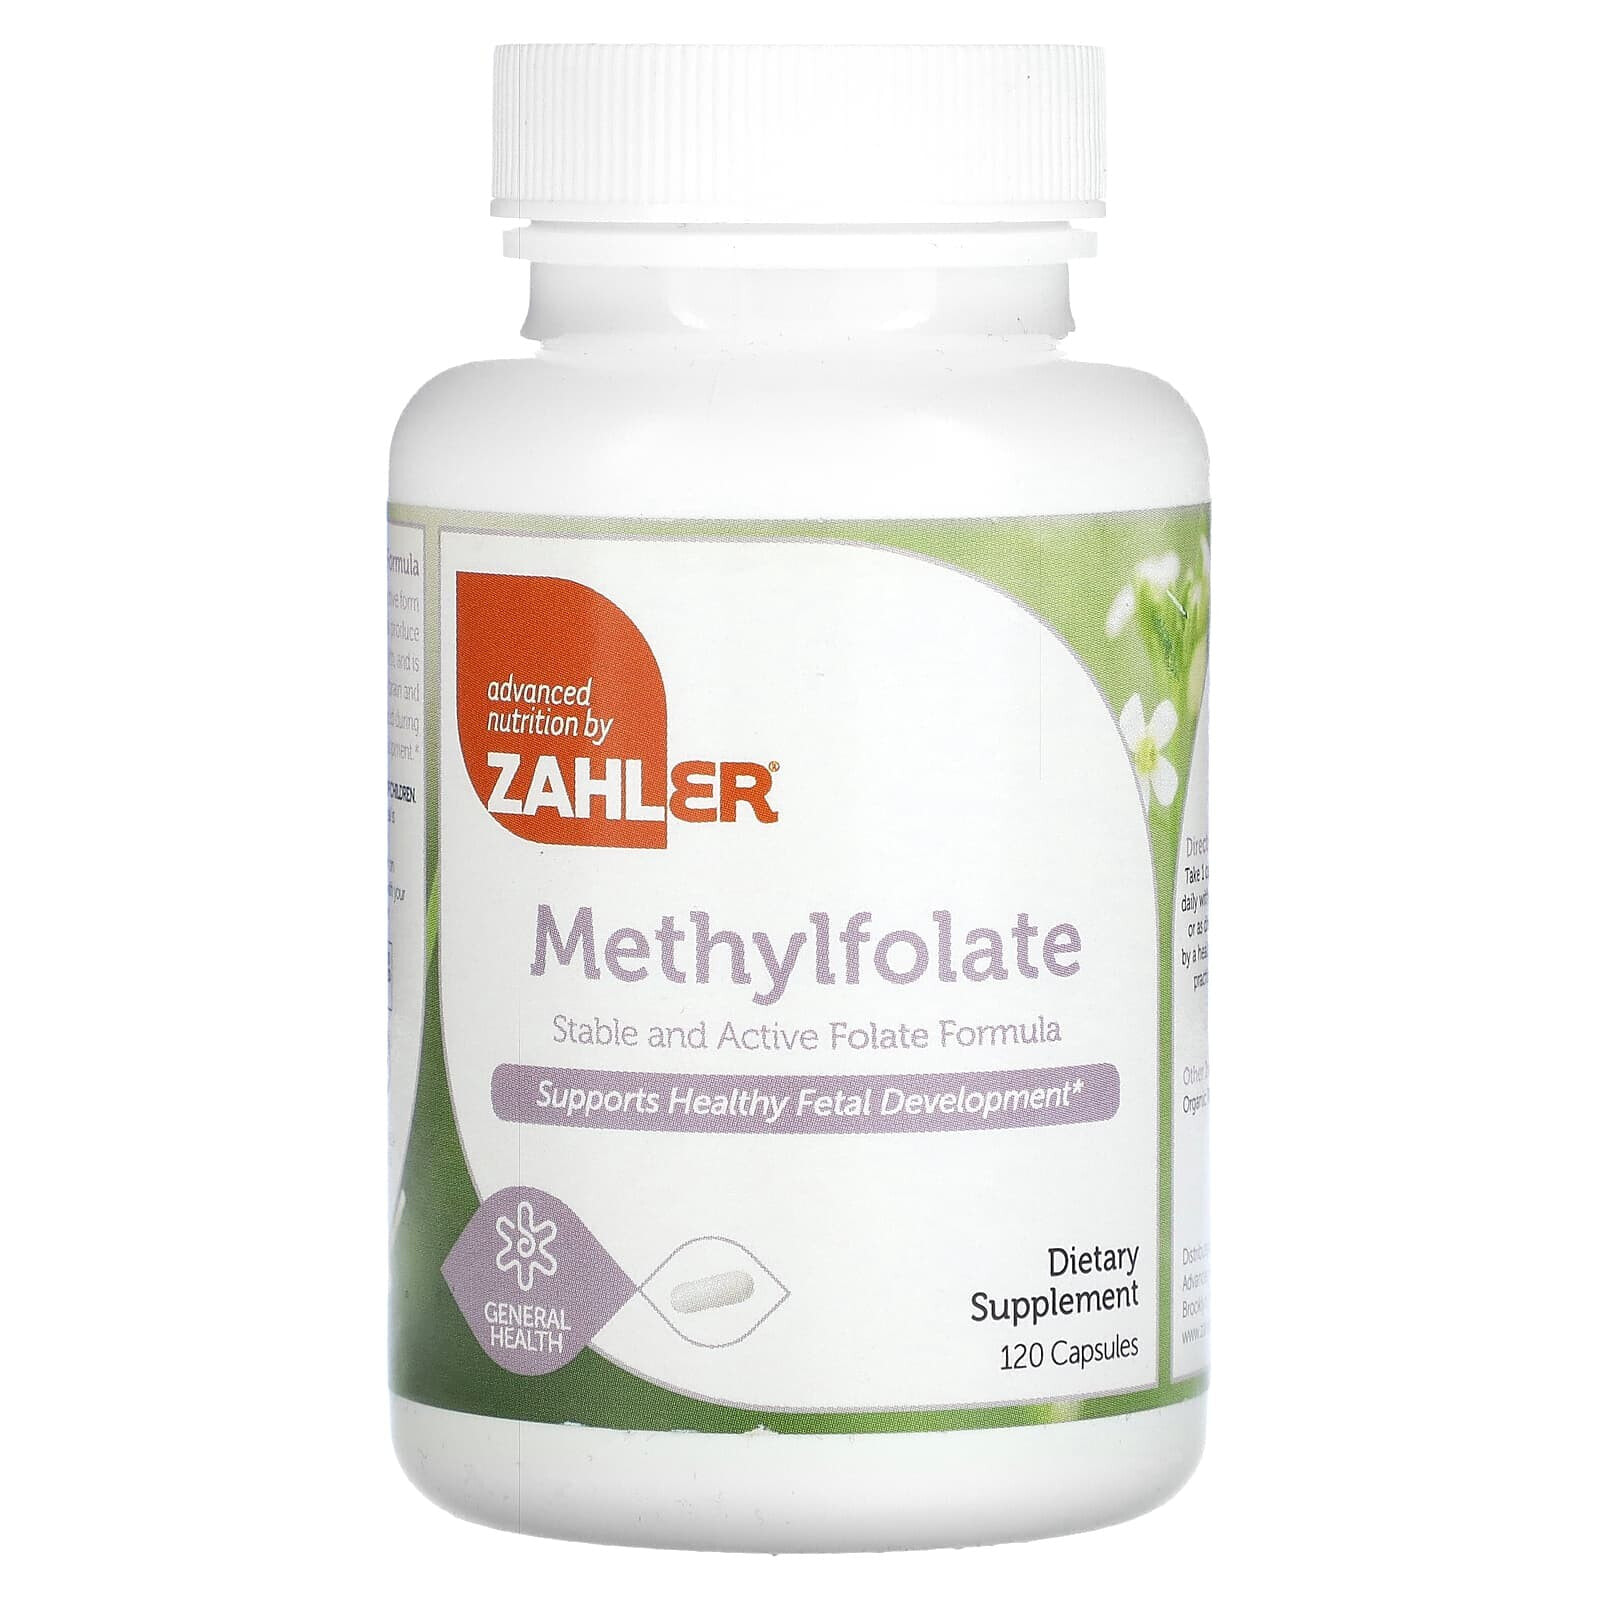 Zahler, метилфолат, стабильный и активный фолат, способствует здоровому развитию плода, 120 капсул